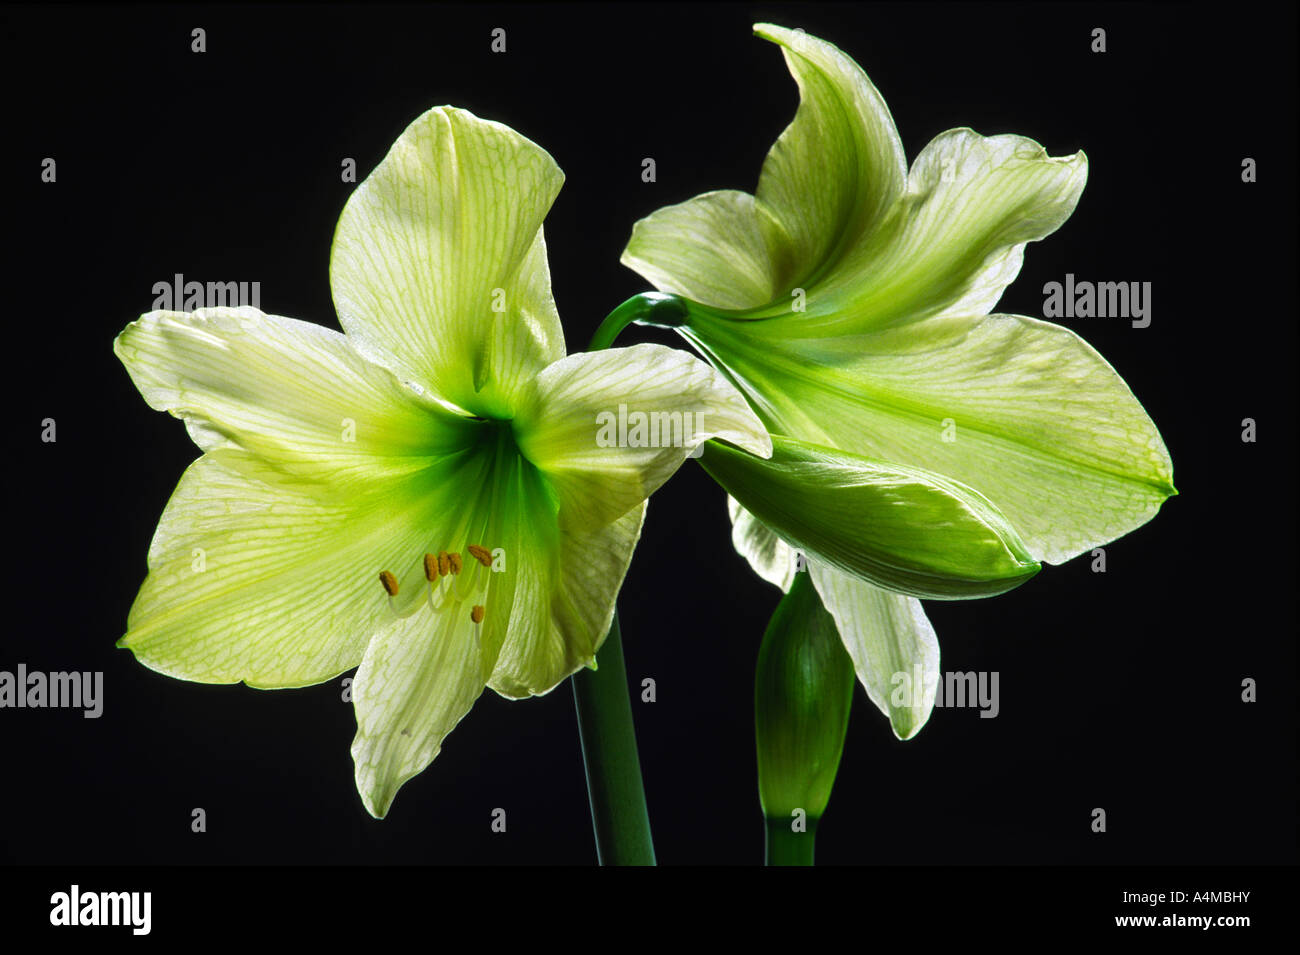 Amaryllis flowers Stock Photo